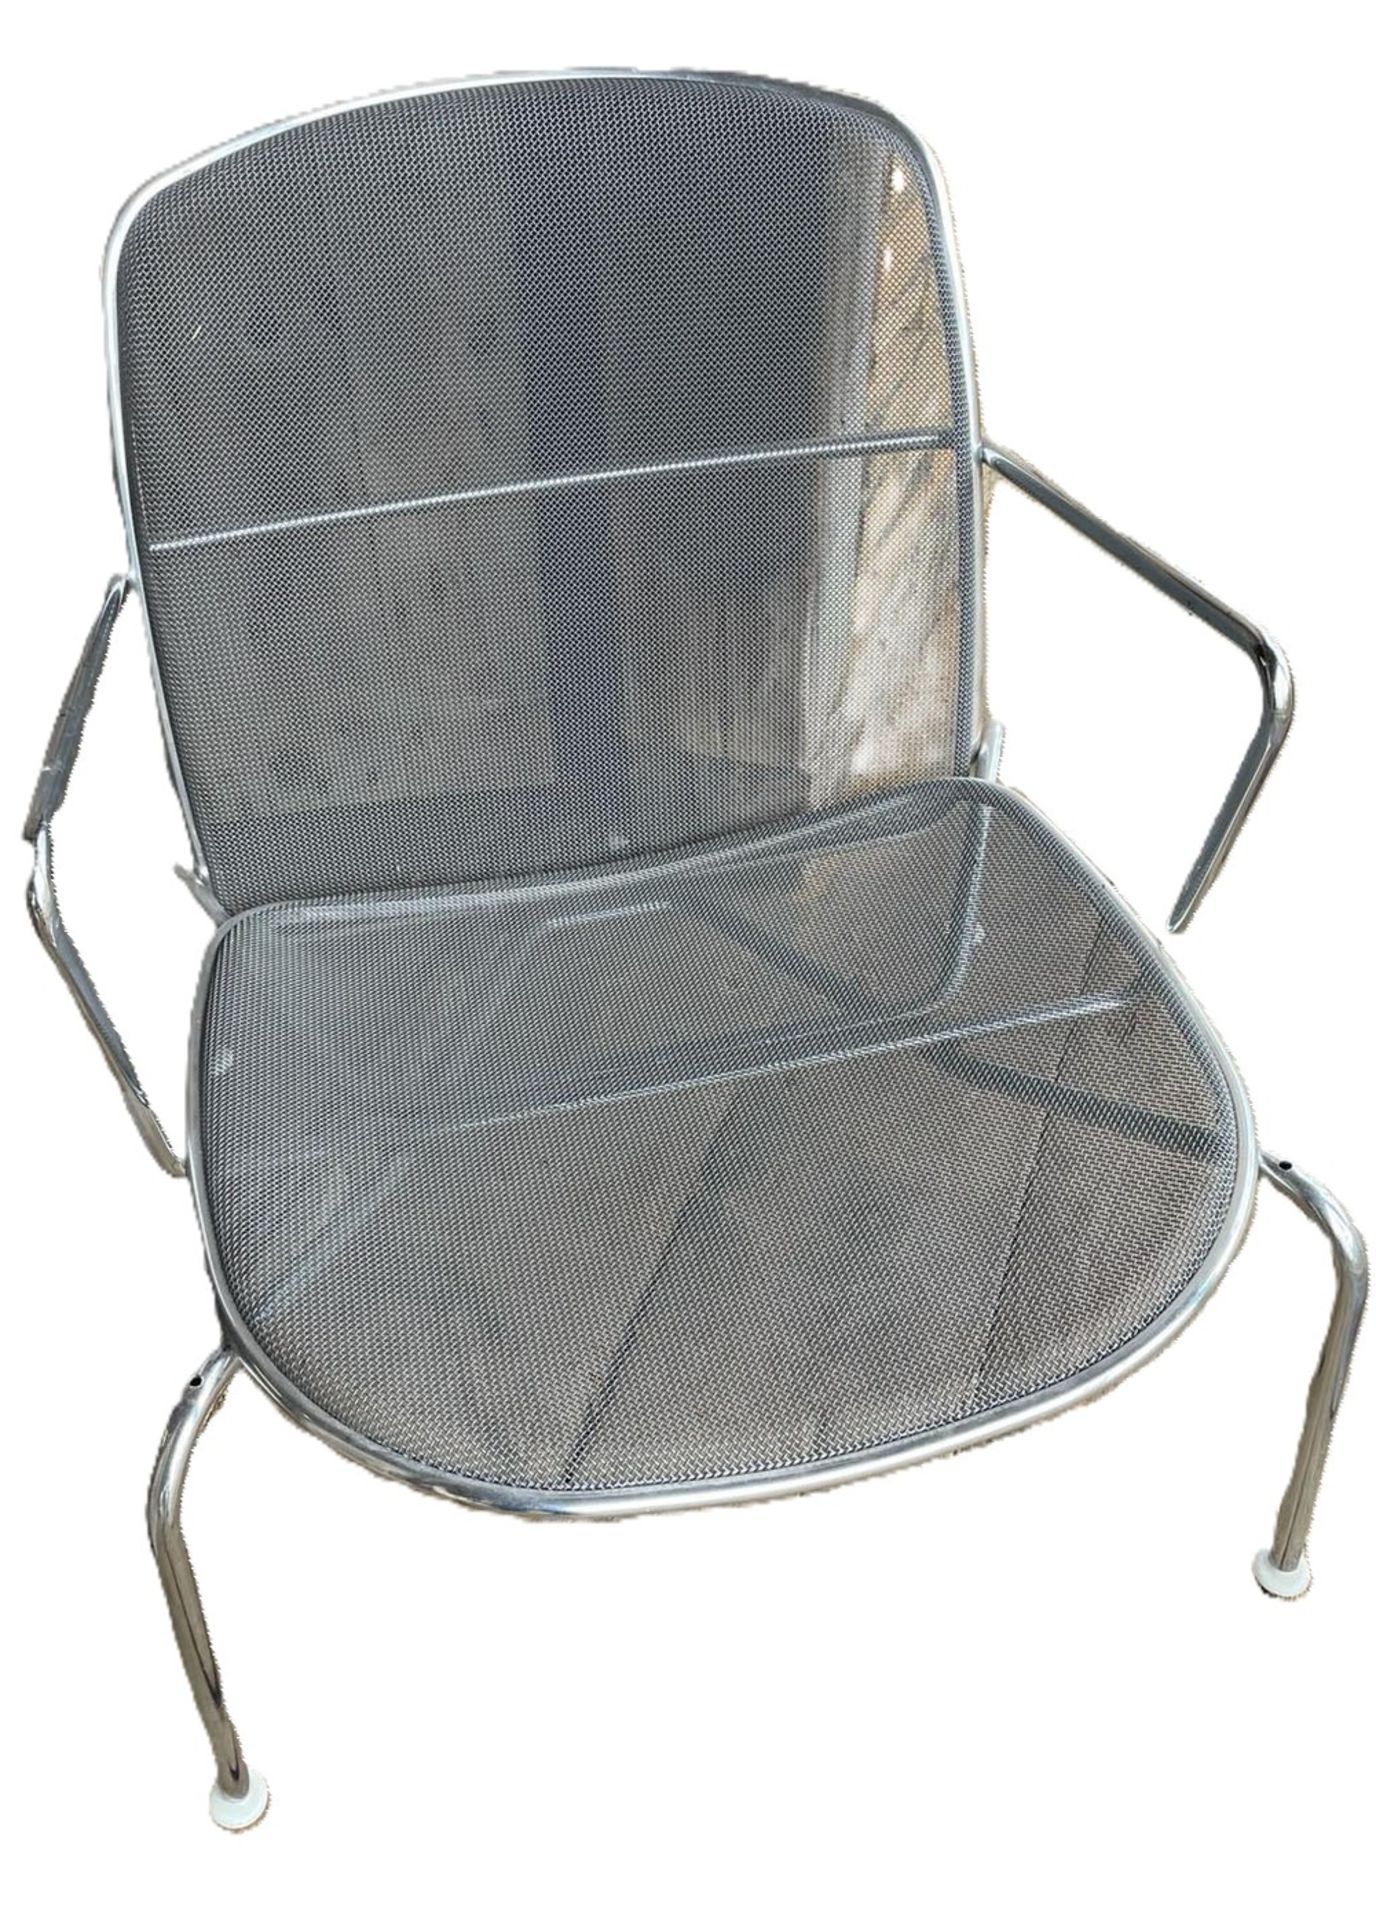 wohl Firma Knoll, Metall Longchair, Sitzfläche abnehmbar, Designklassiker aus den 80er Jahren.